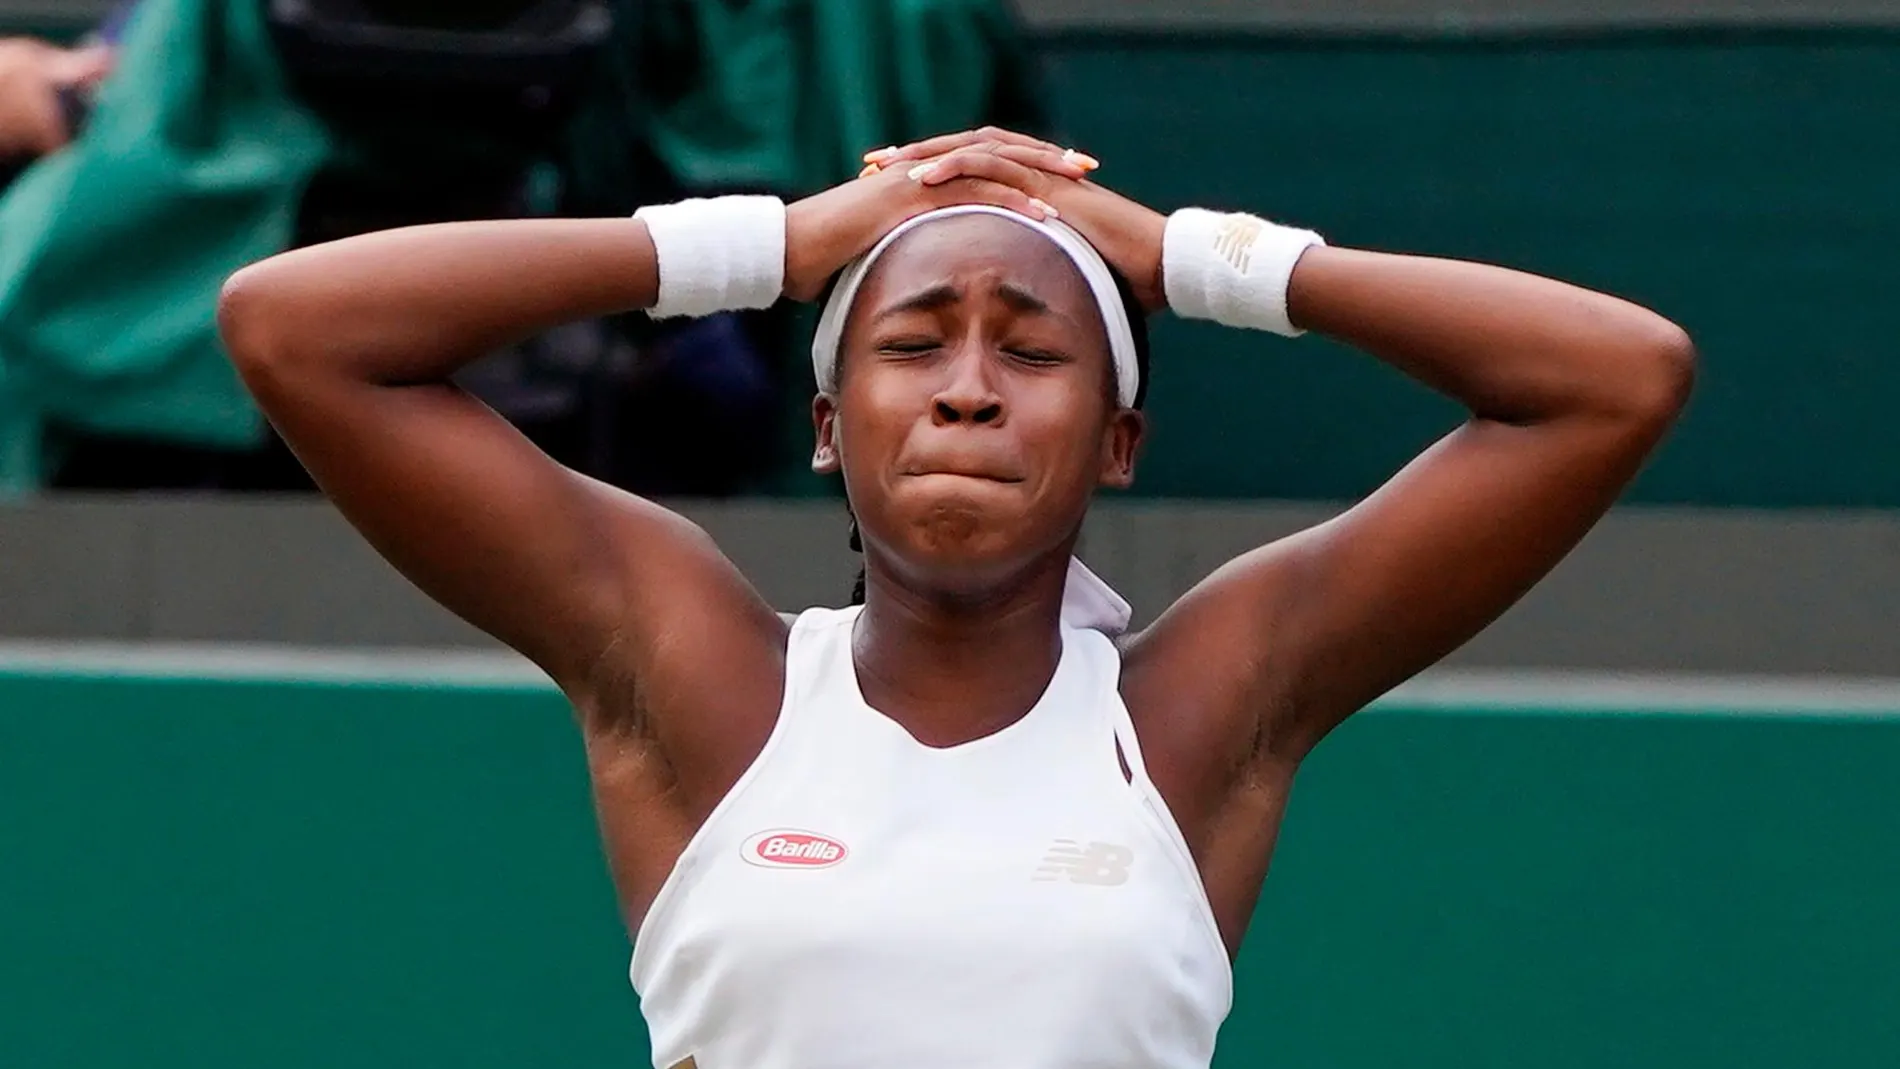 Cori Gauff después de ganar a Venus Williams en primera ronda de Wimbledon